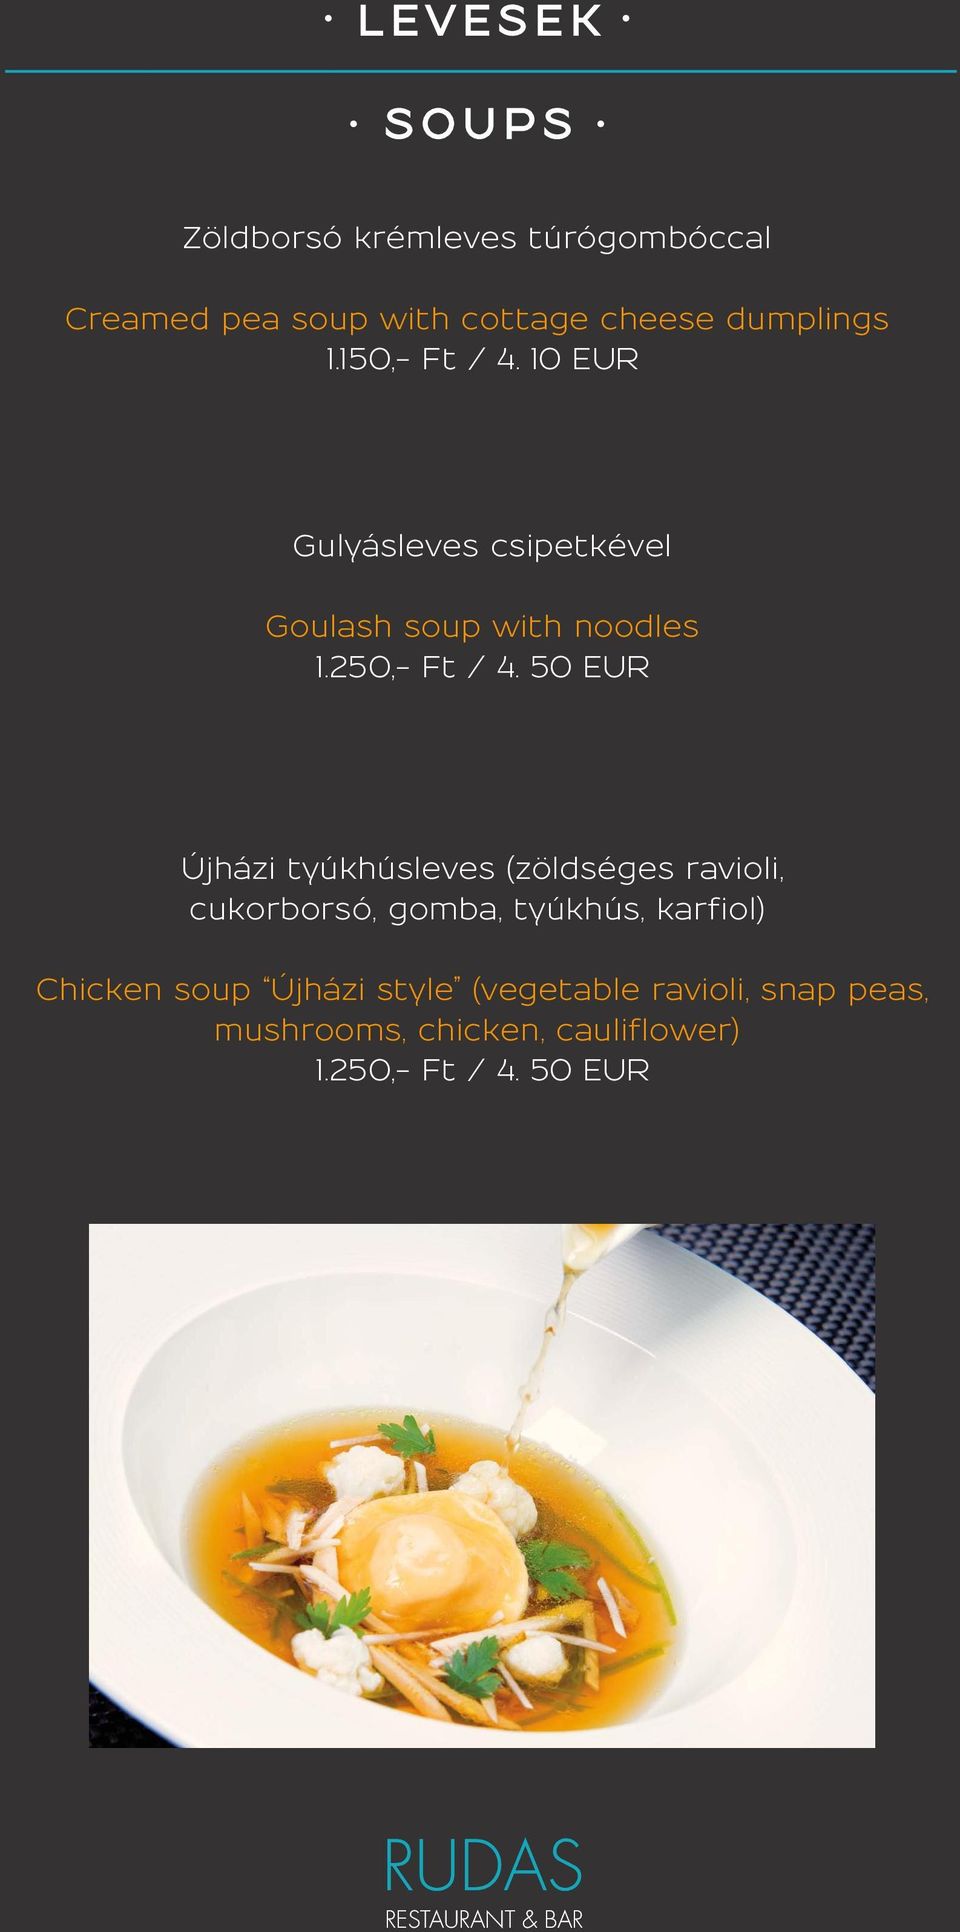 50 EUR Újházi tyúkhúsleves (zöldséges ravioli, cukorborsó, gomba, tyúkhús, karfiol) Chicken